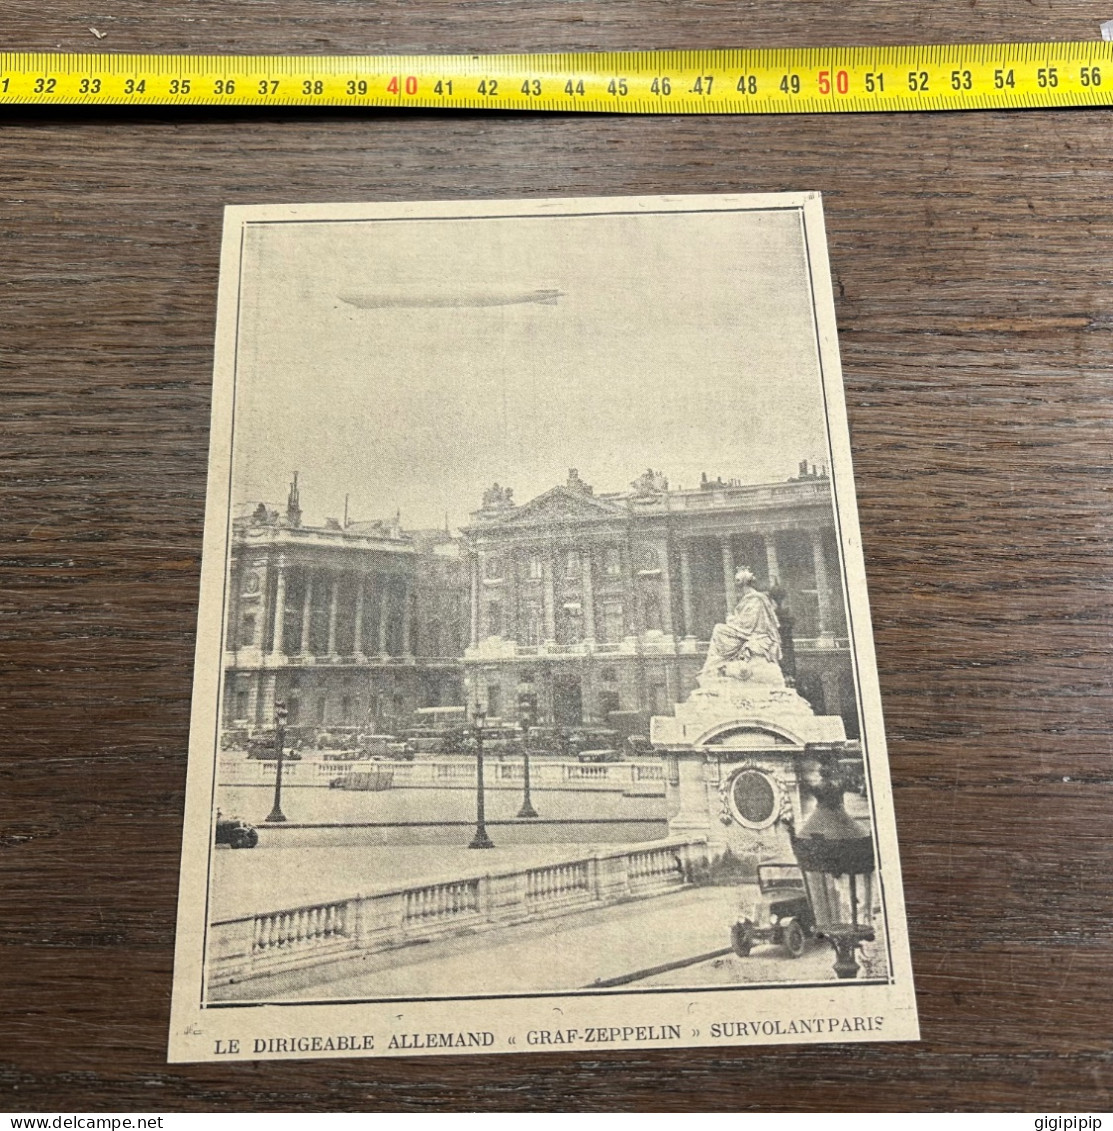 1930 GHI18 DIRIGEABLE ALLEMAND « GRAF-ZEPPELIN » SURVOLANT PARIS - Sammlungen